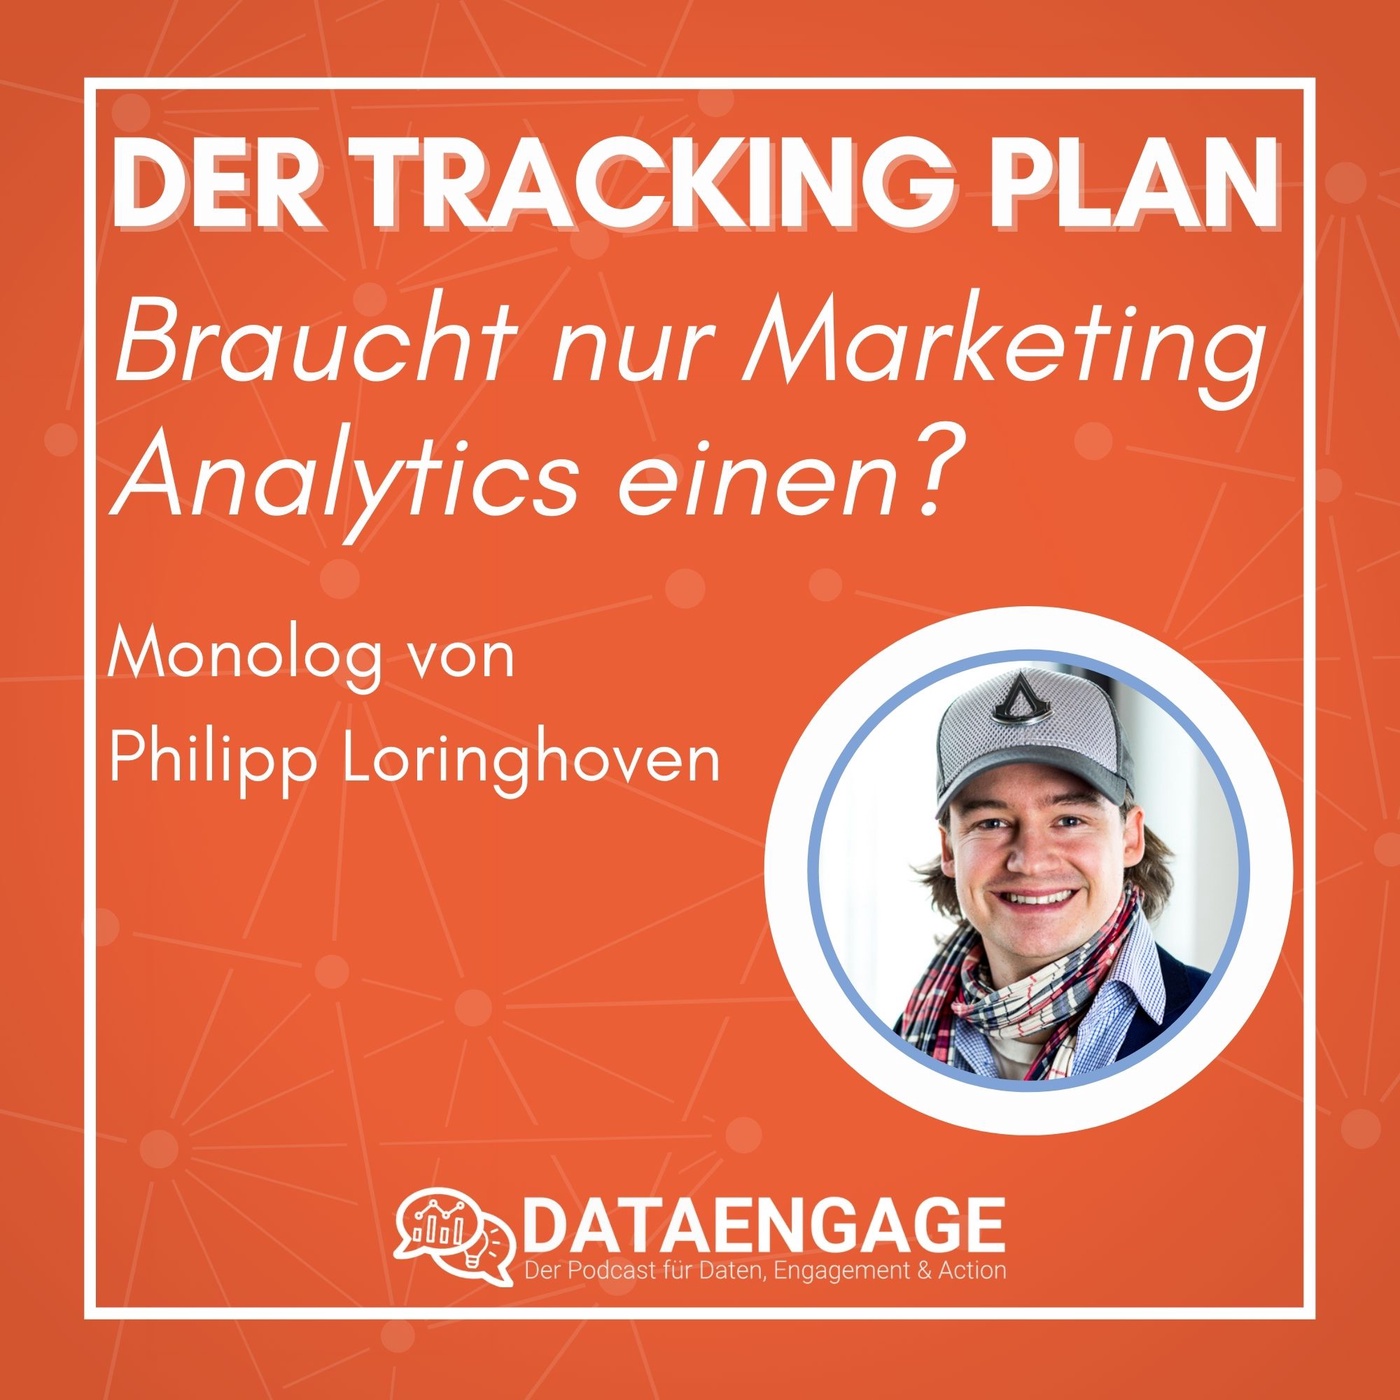 Braucht nur Marketing für die Analytics einen Website Tracking Plan? Monolog von Philipp Loringhoven